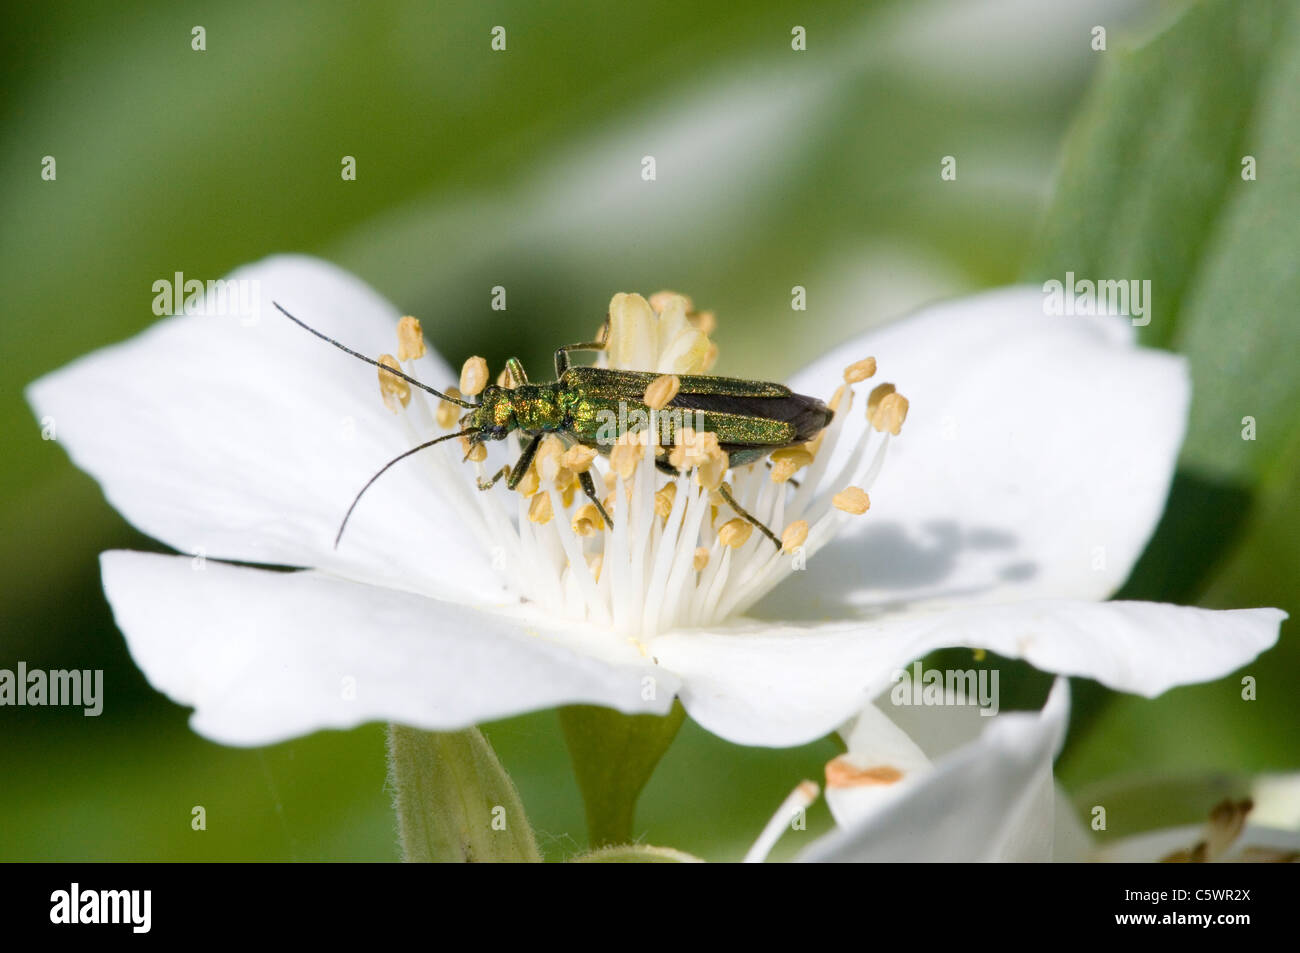 Fleur femelle pattes épaisses Beetle Oedemera nobilis seule femelle adulte reposant sur fleur Dorset, Royaume Uni Banque D'Images